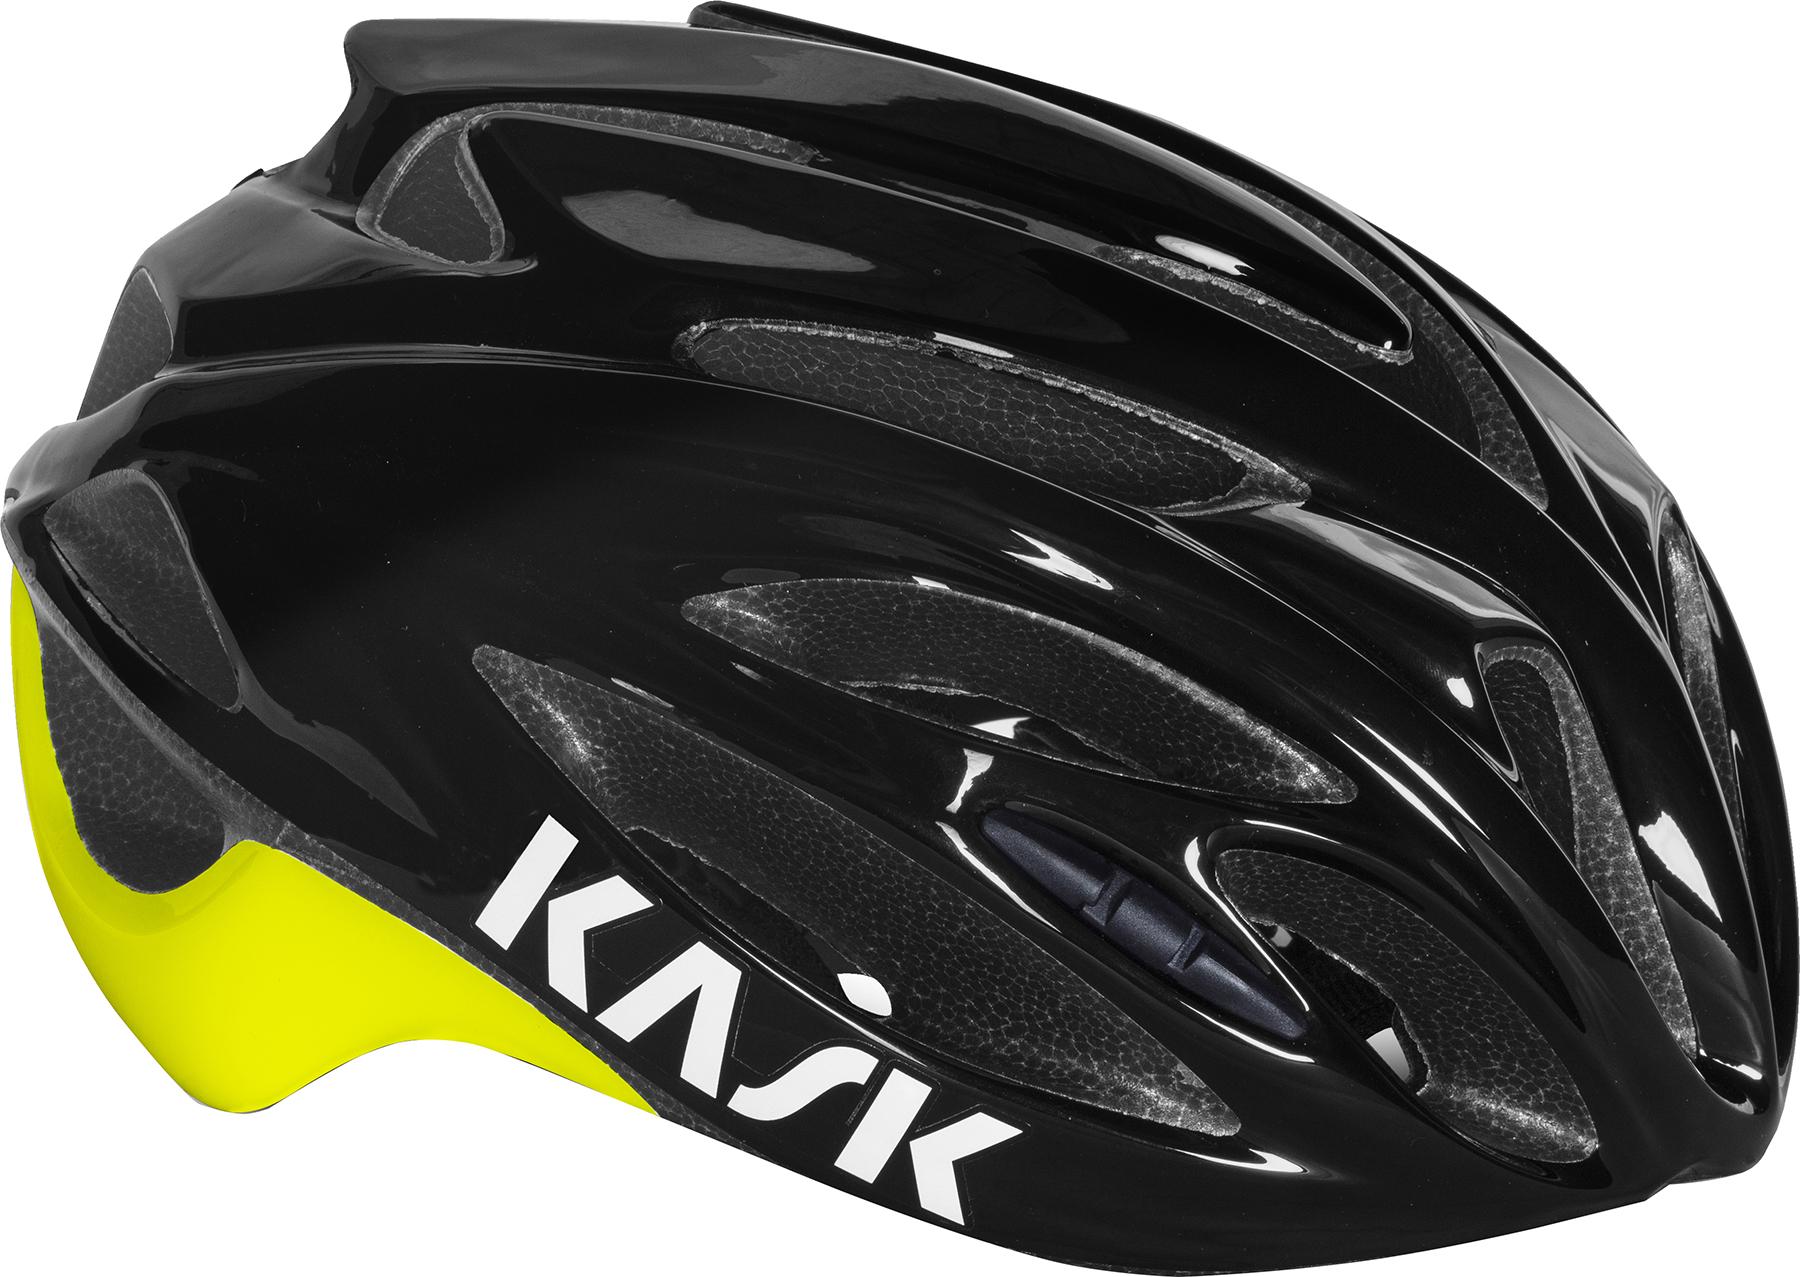 Kask Rapido Helmet - Black/yellow